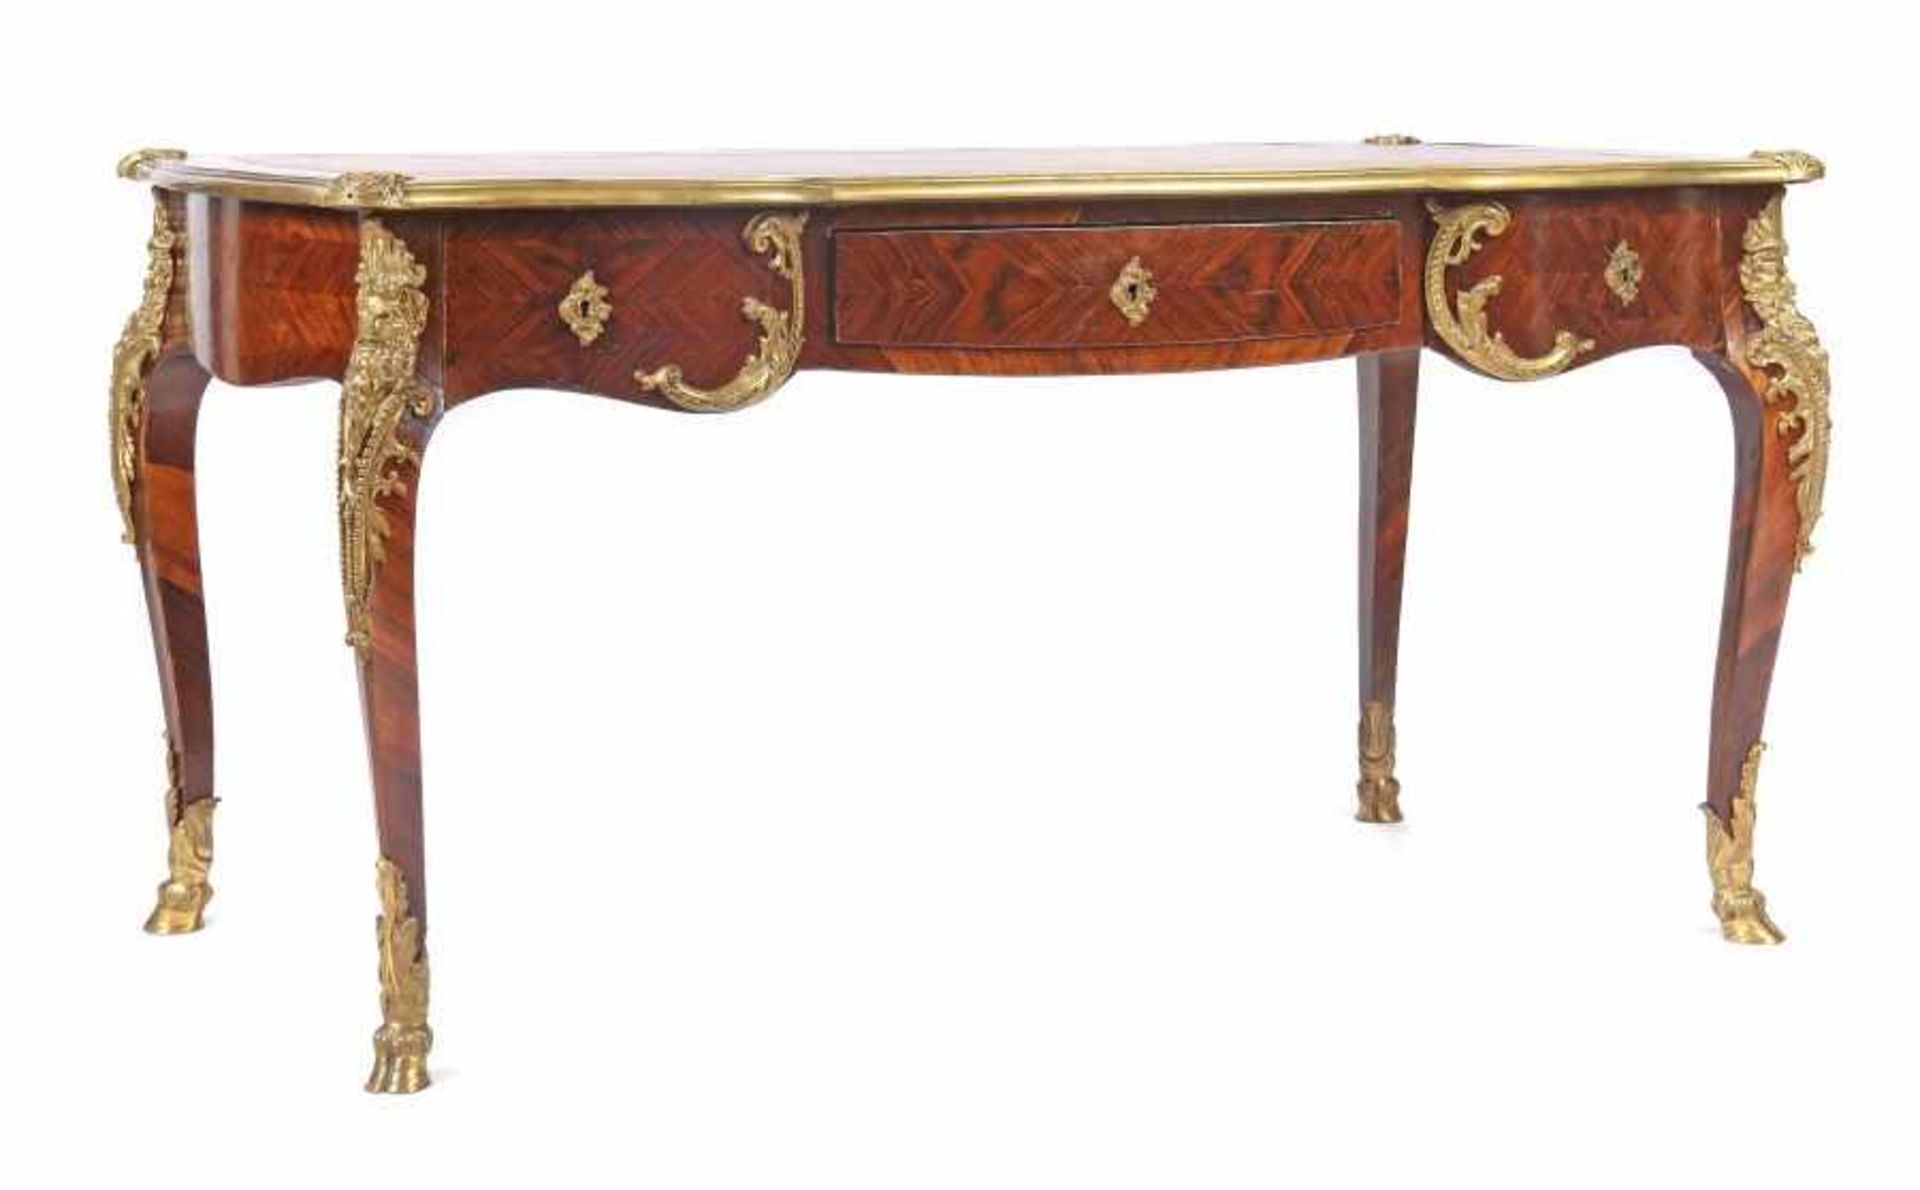 Bureau Plat im Louis XV-StilFrankreich, Ende 19. Jh., großer Schreibtisch mit drei Schubladen, reich